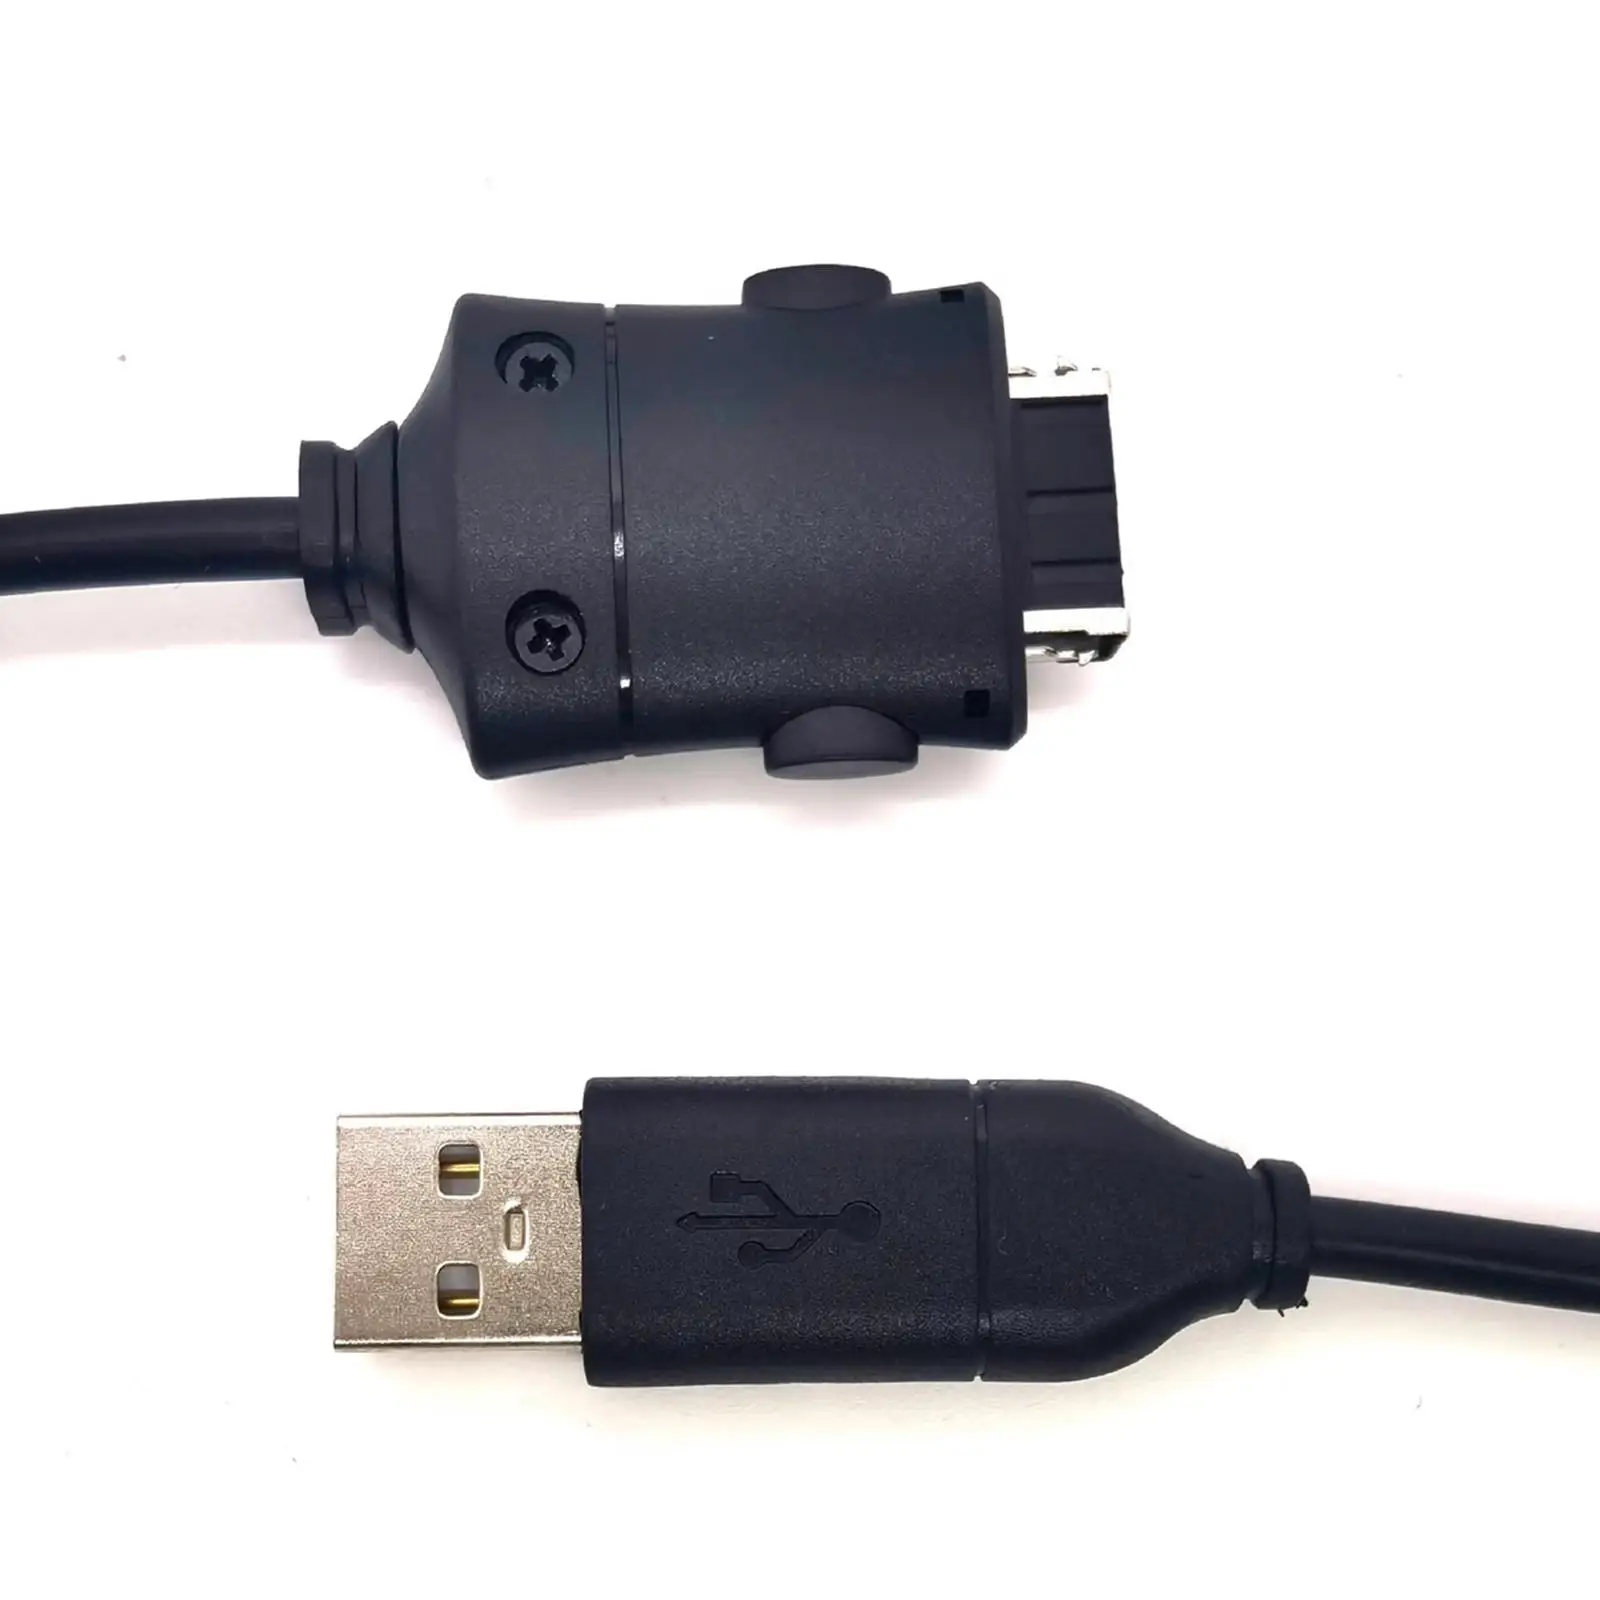 Suc-c2 USB Кабель Для Зарядки Данных Шнур Простой в Использовании Аксессуар Прочный Сменный Шнур для Передачи данных для Цифровой Камеры i85 L83T L70 i6 - 5